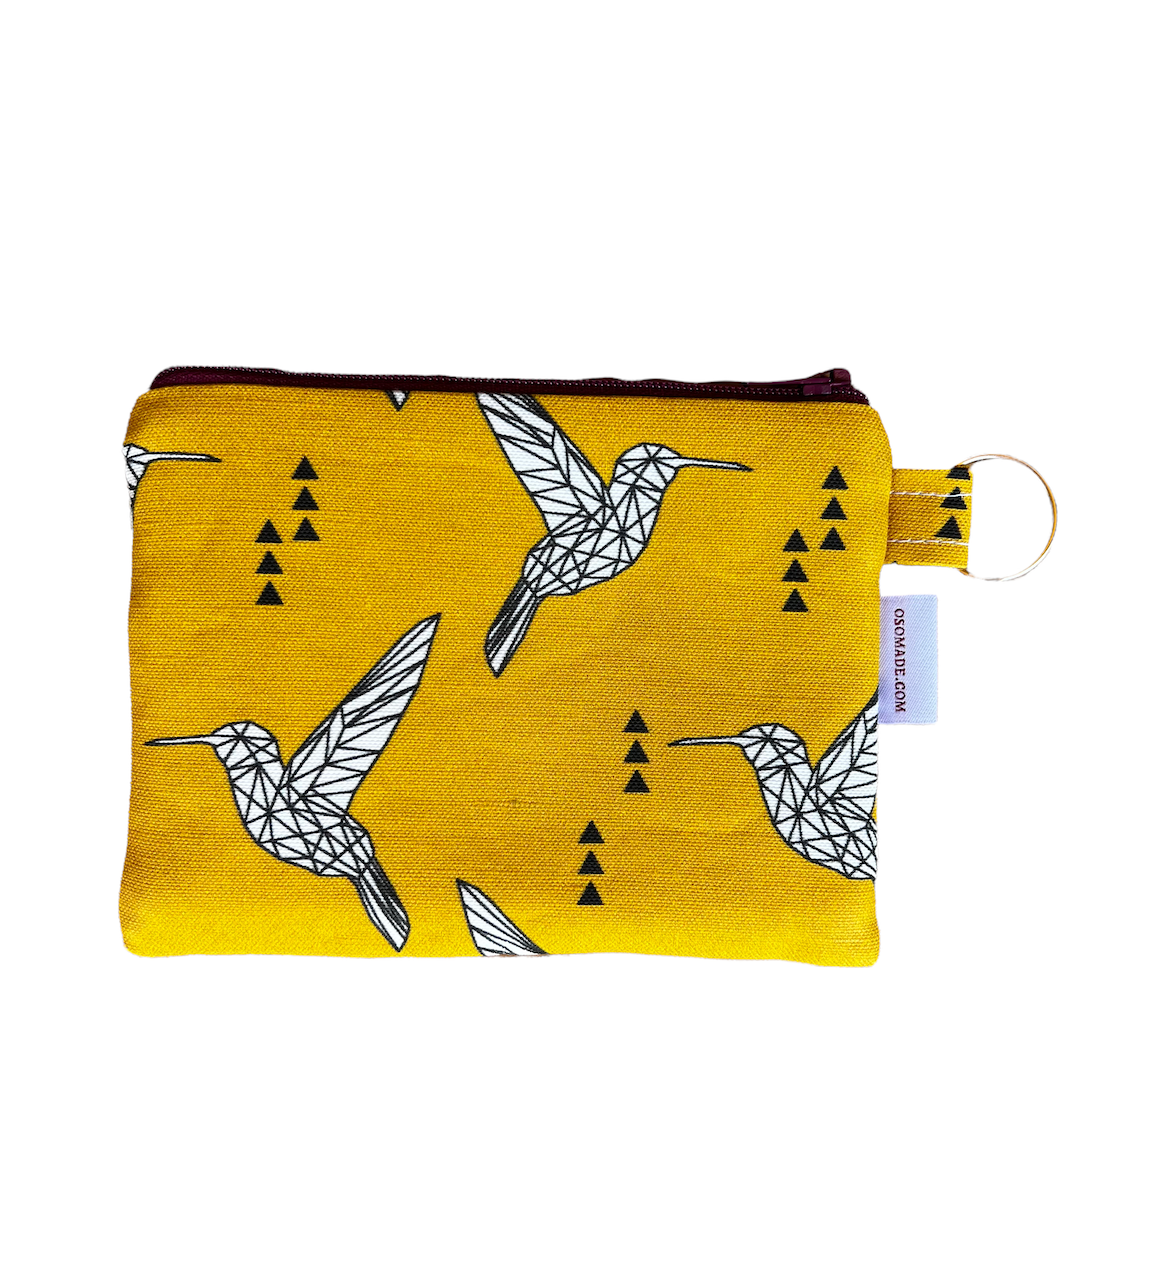 Geometric Hummingbird coin purse, gold linen cotton zipper pouch with bird, bird print change purse, 6"x4.5"